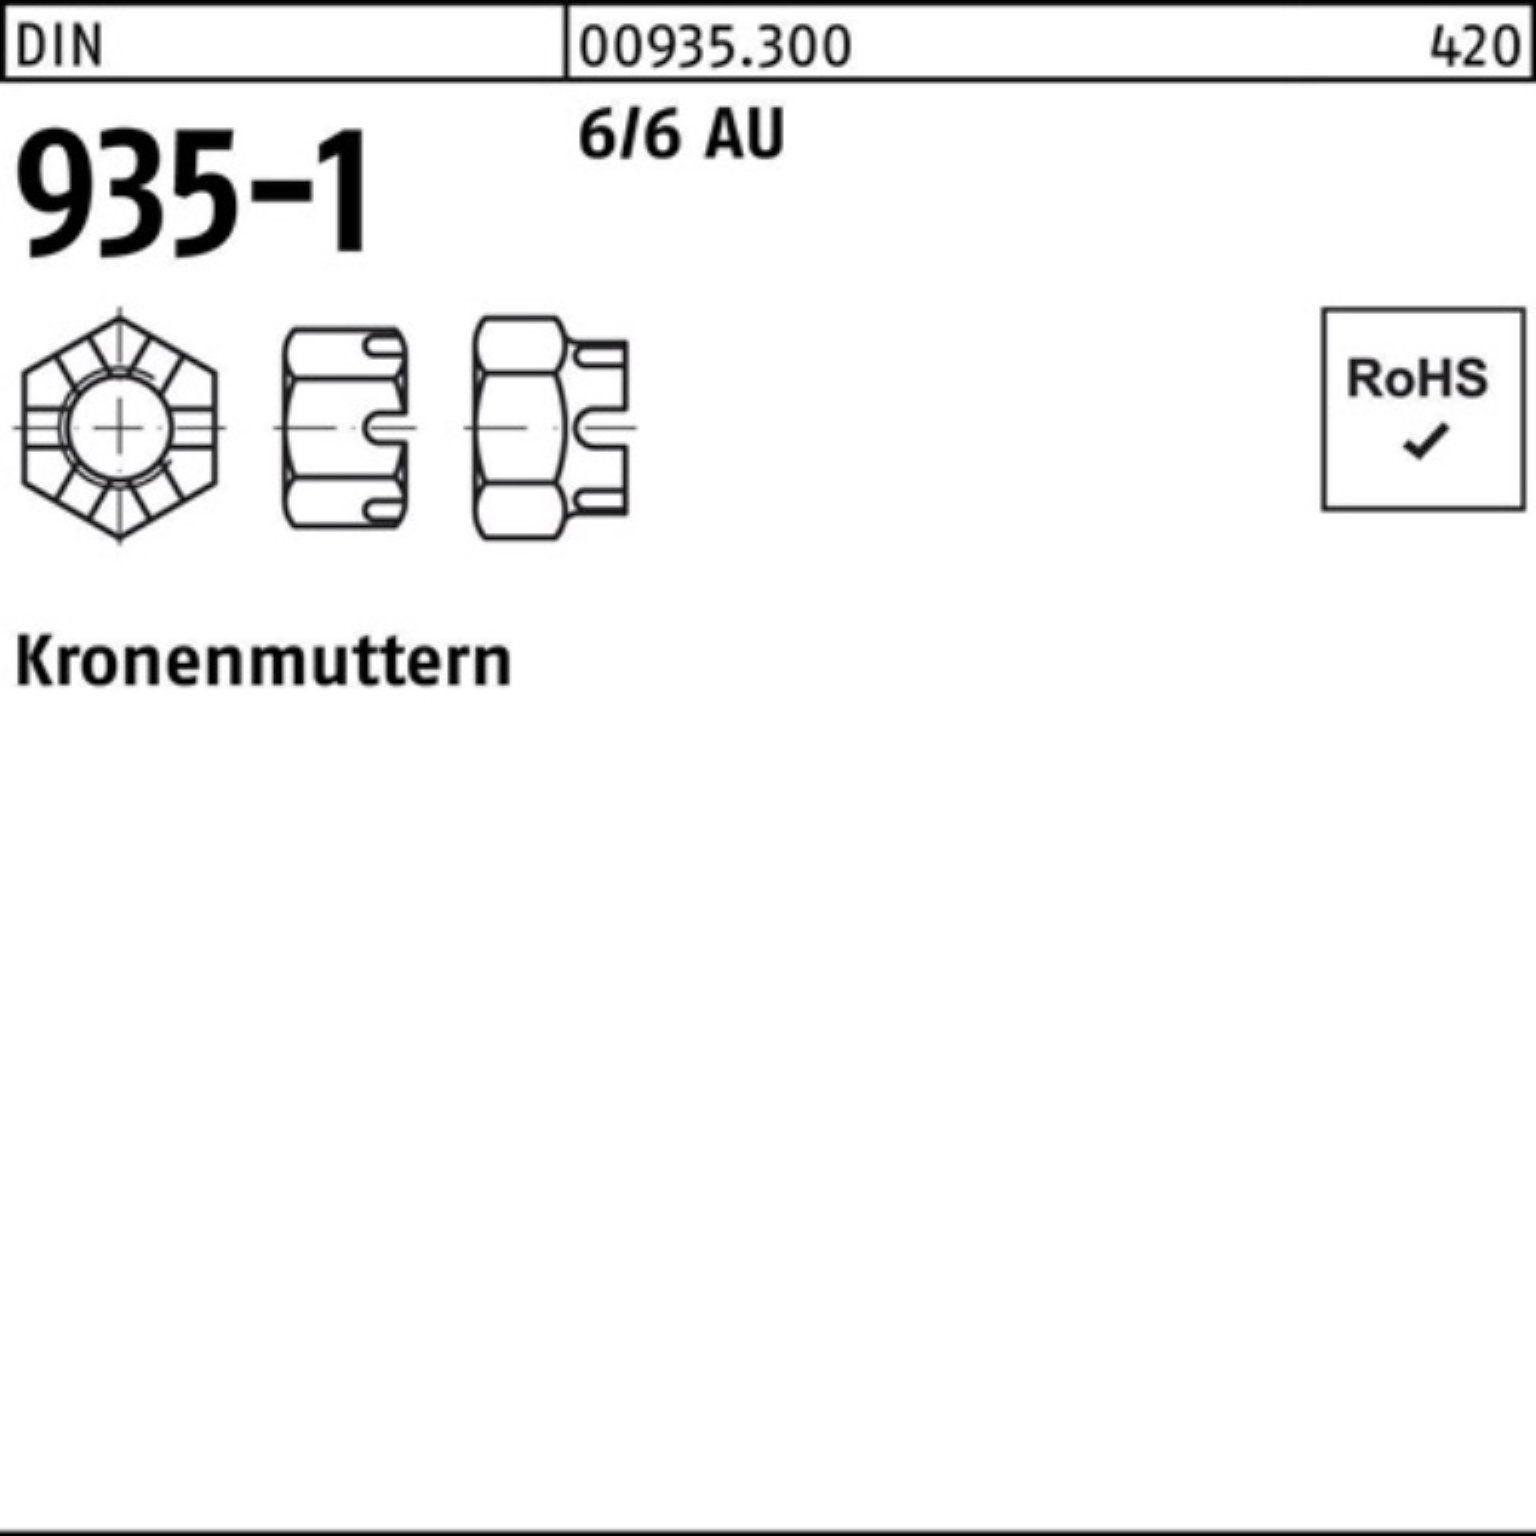 Reyher Kronenmutter 100er Pack Kronenmutter Automatenstahl Stück 935-1 10 DIN M30 6/6 DIN